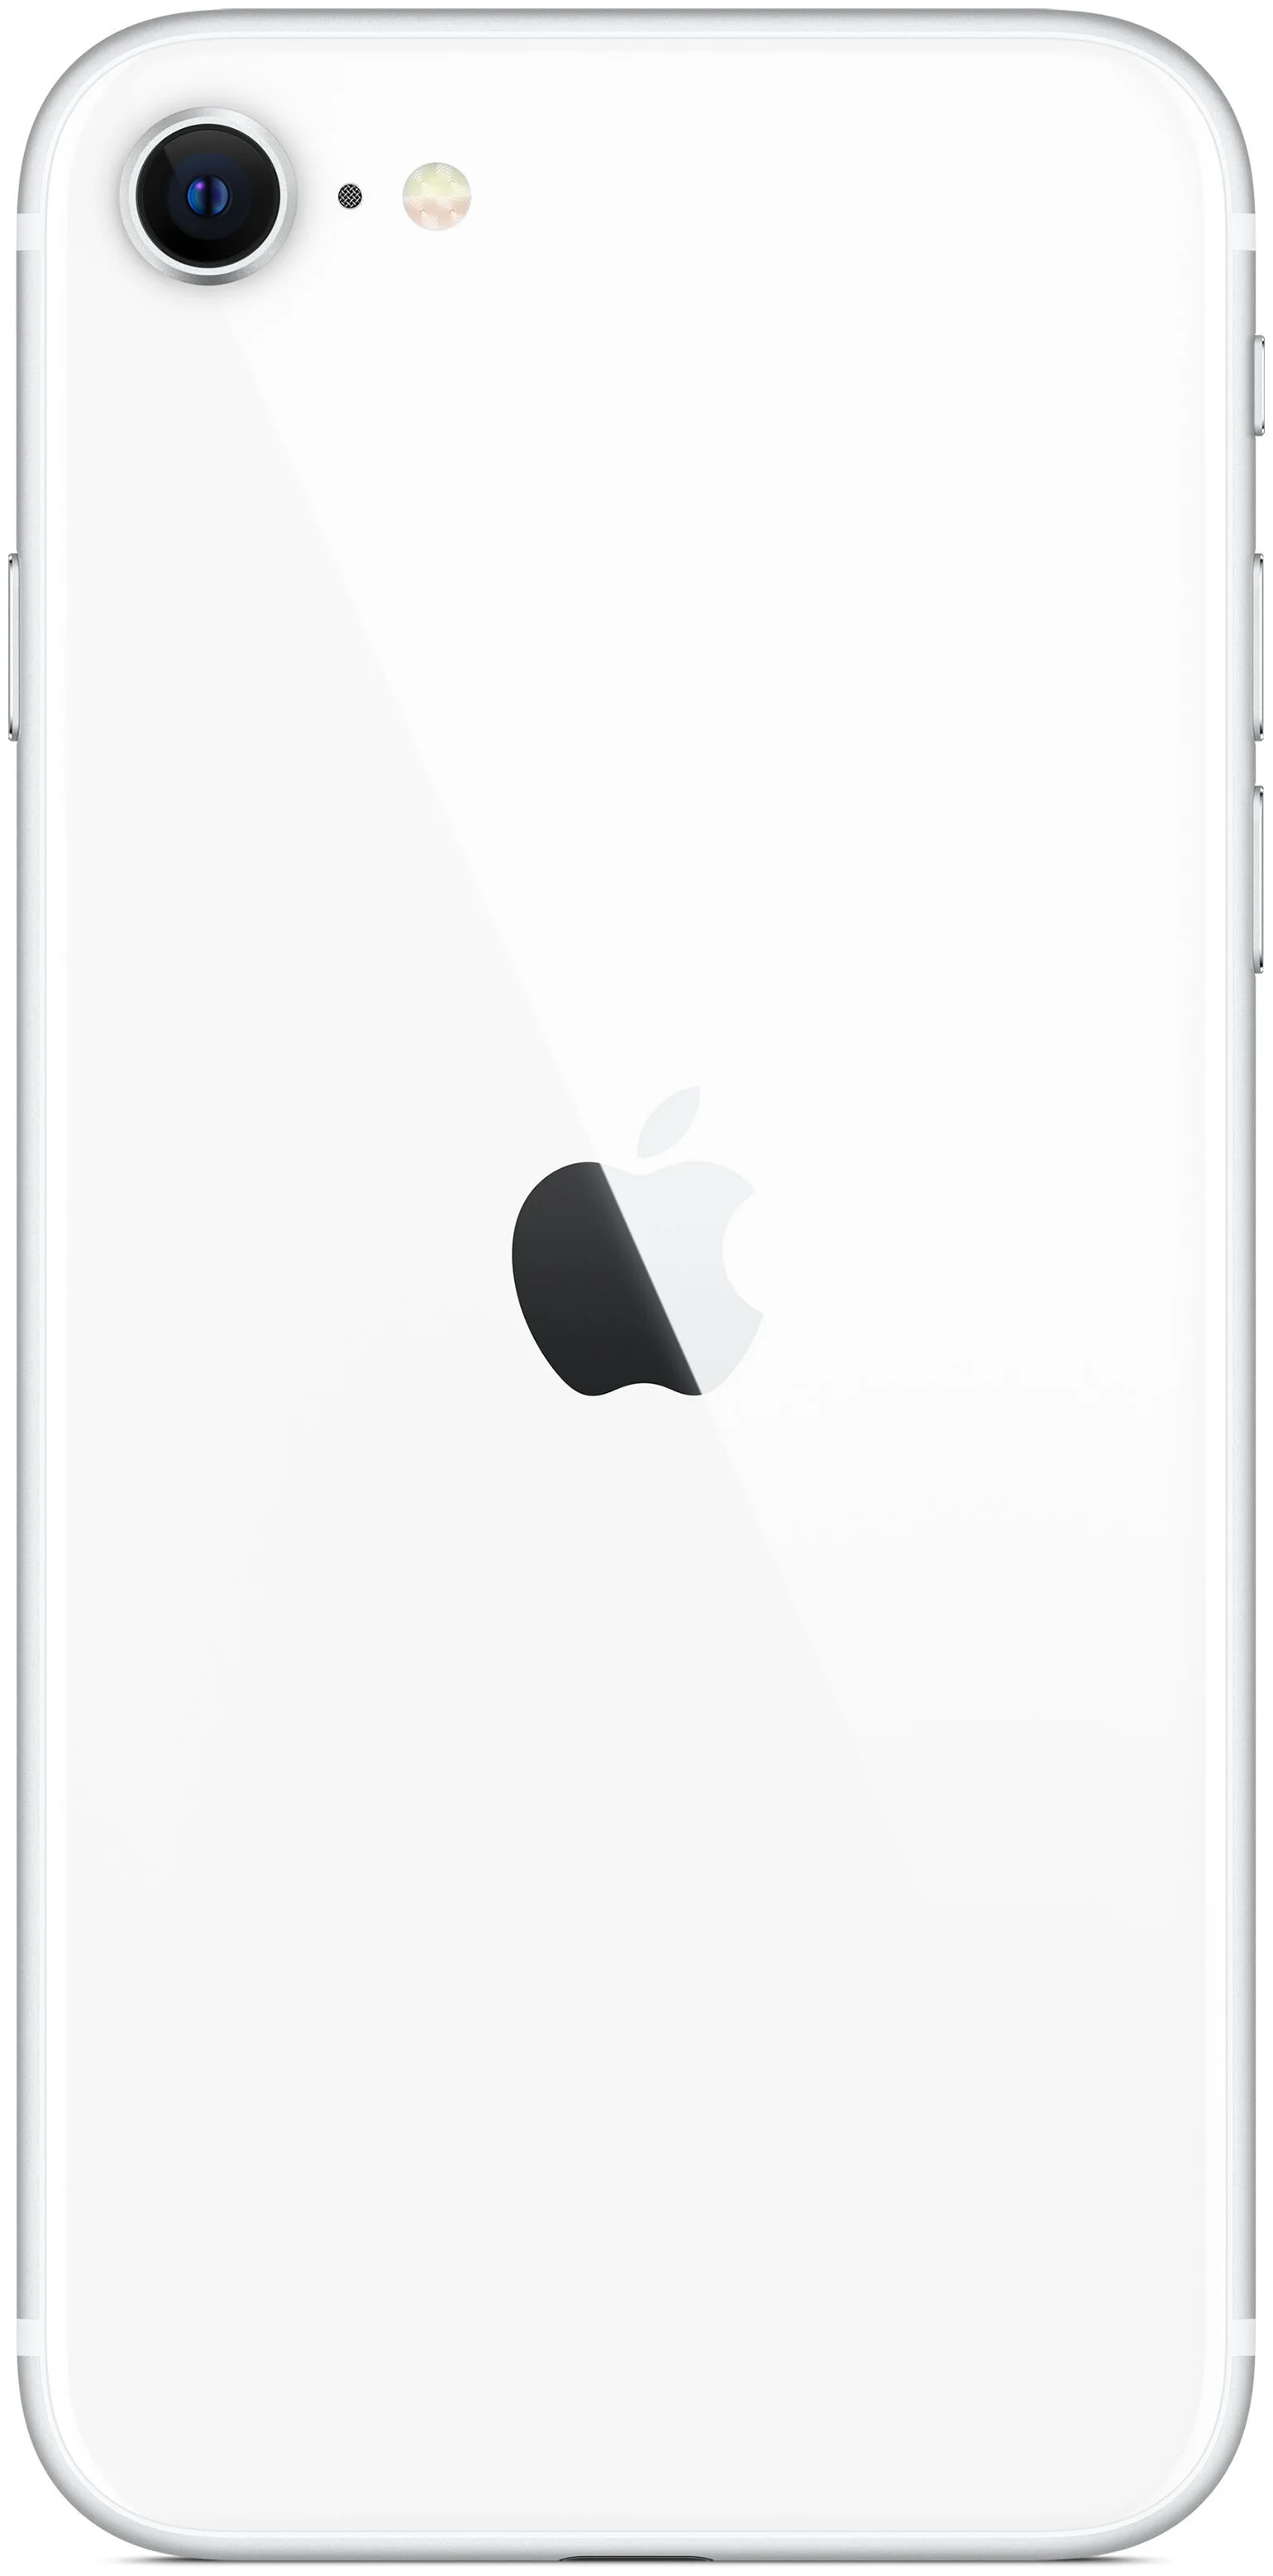 Apple iPhone SE 2020 64GB - оперативная память: 3 ГБ